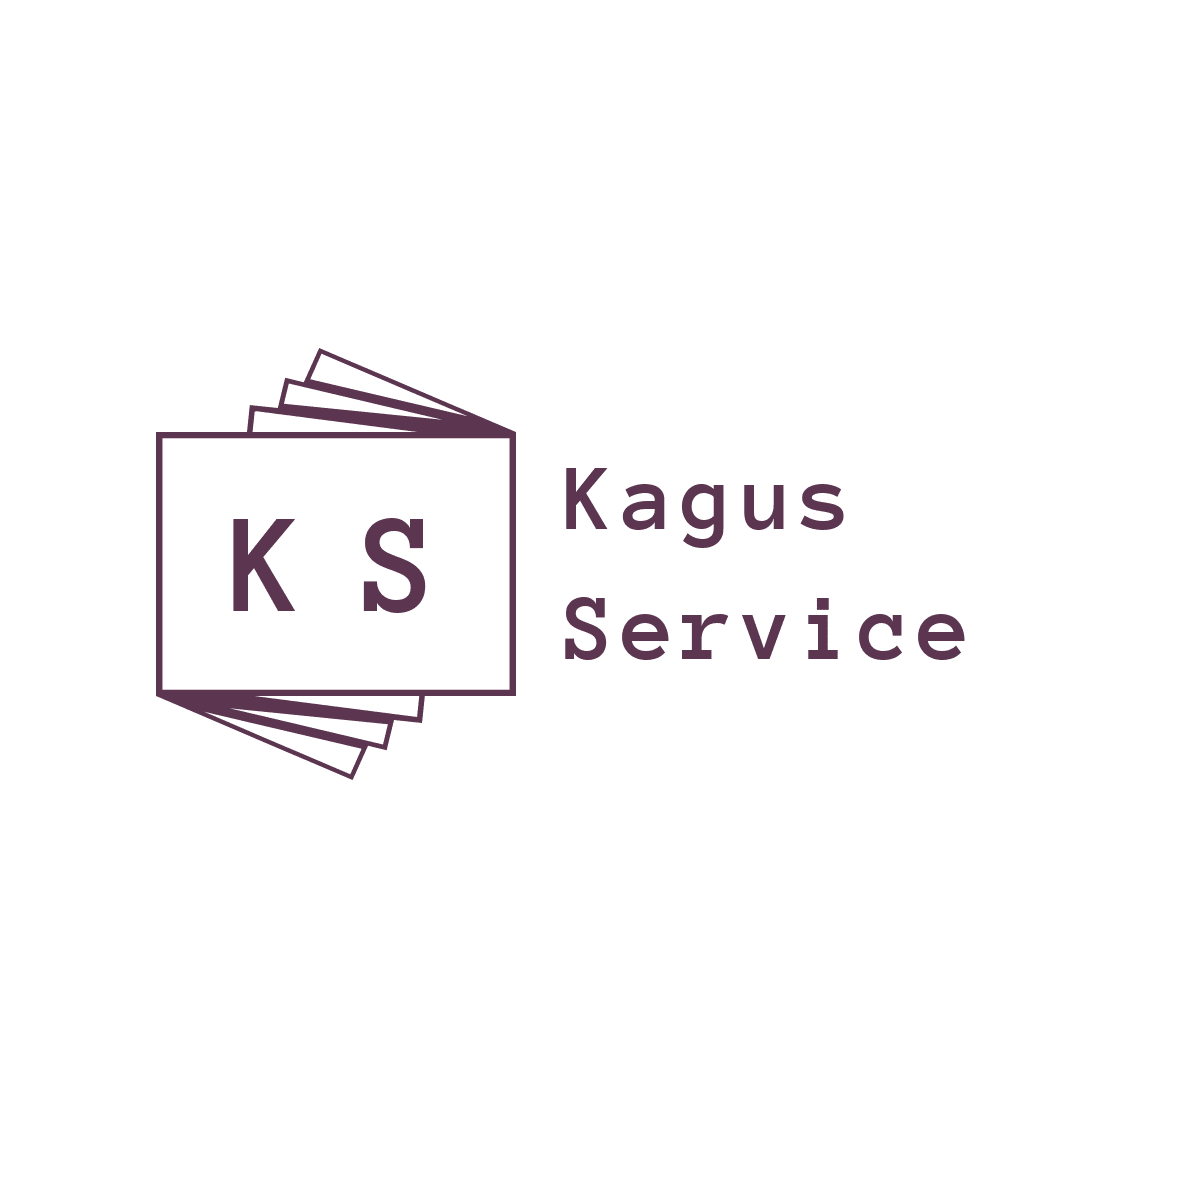 KAGUS SERVICE